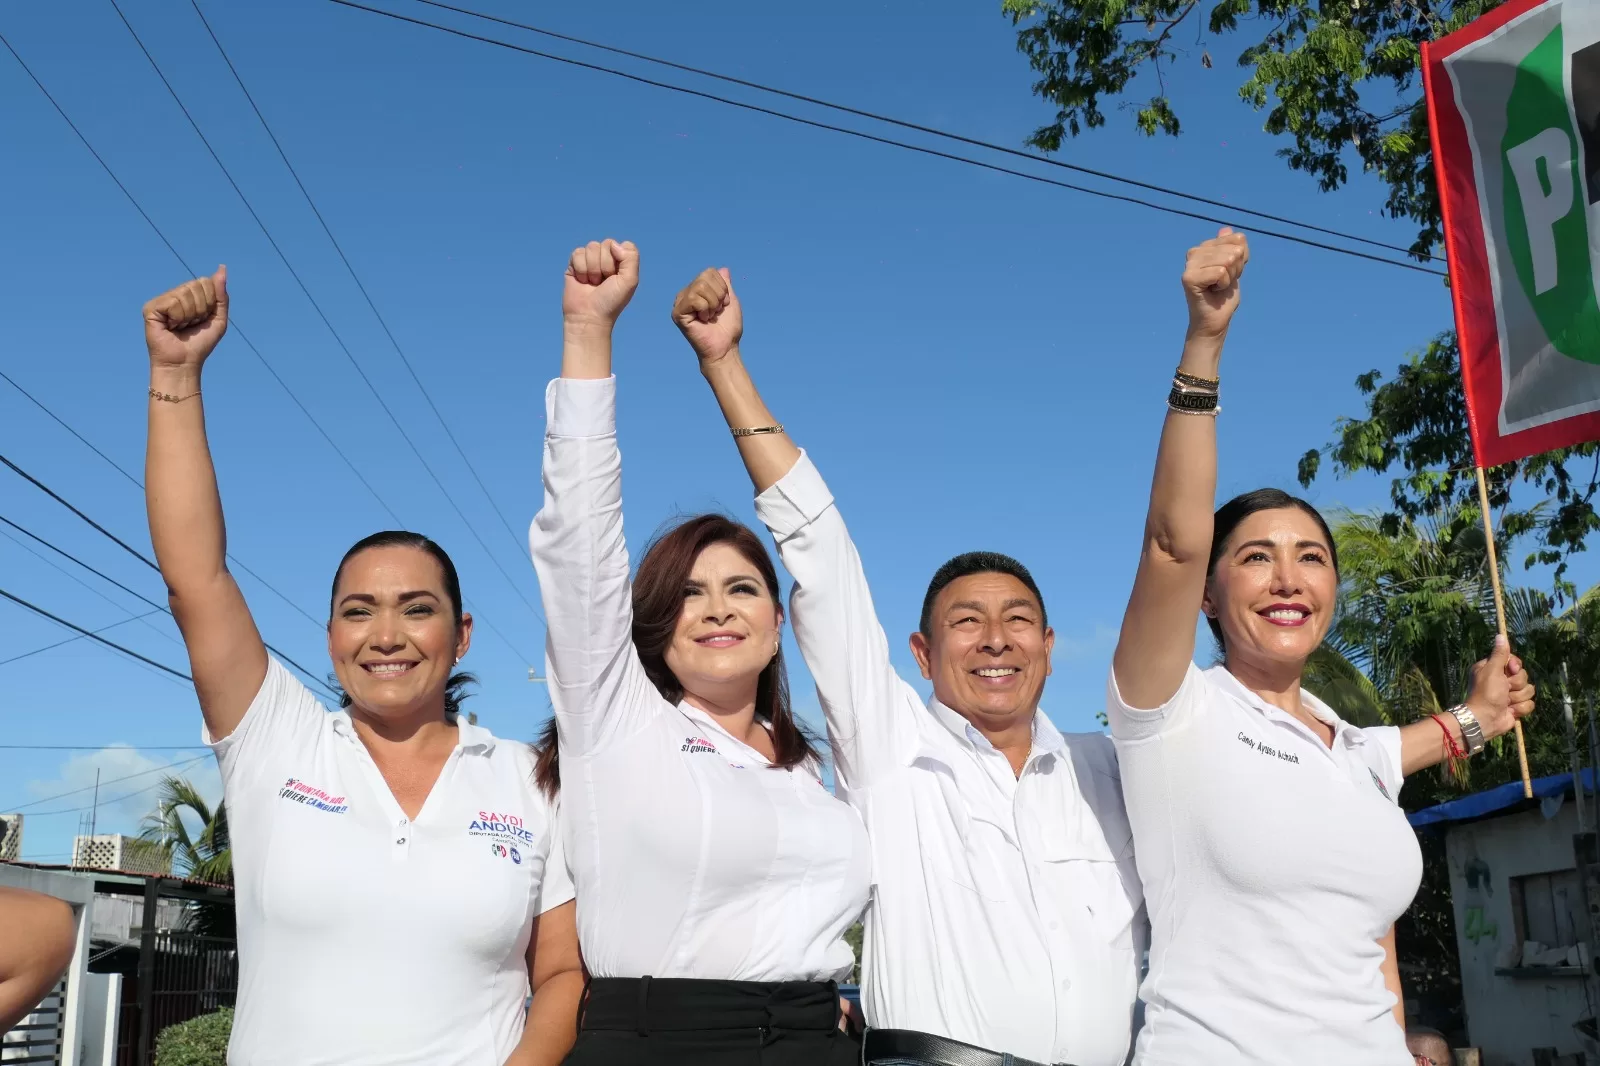 Portomorelenses votarán contra el saqueo, la ilegalidad y la violencia: Fernanda Alvear